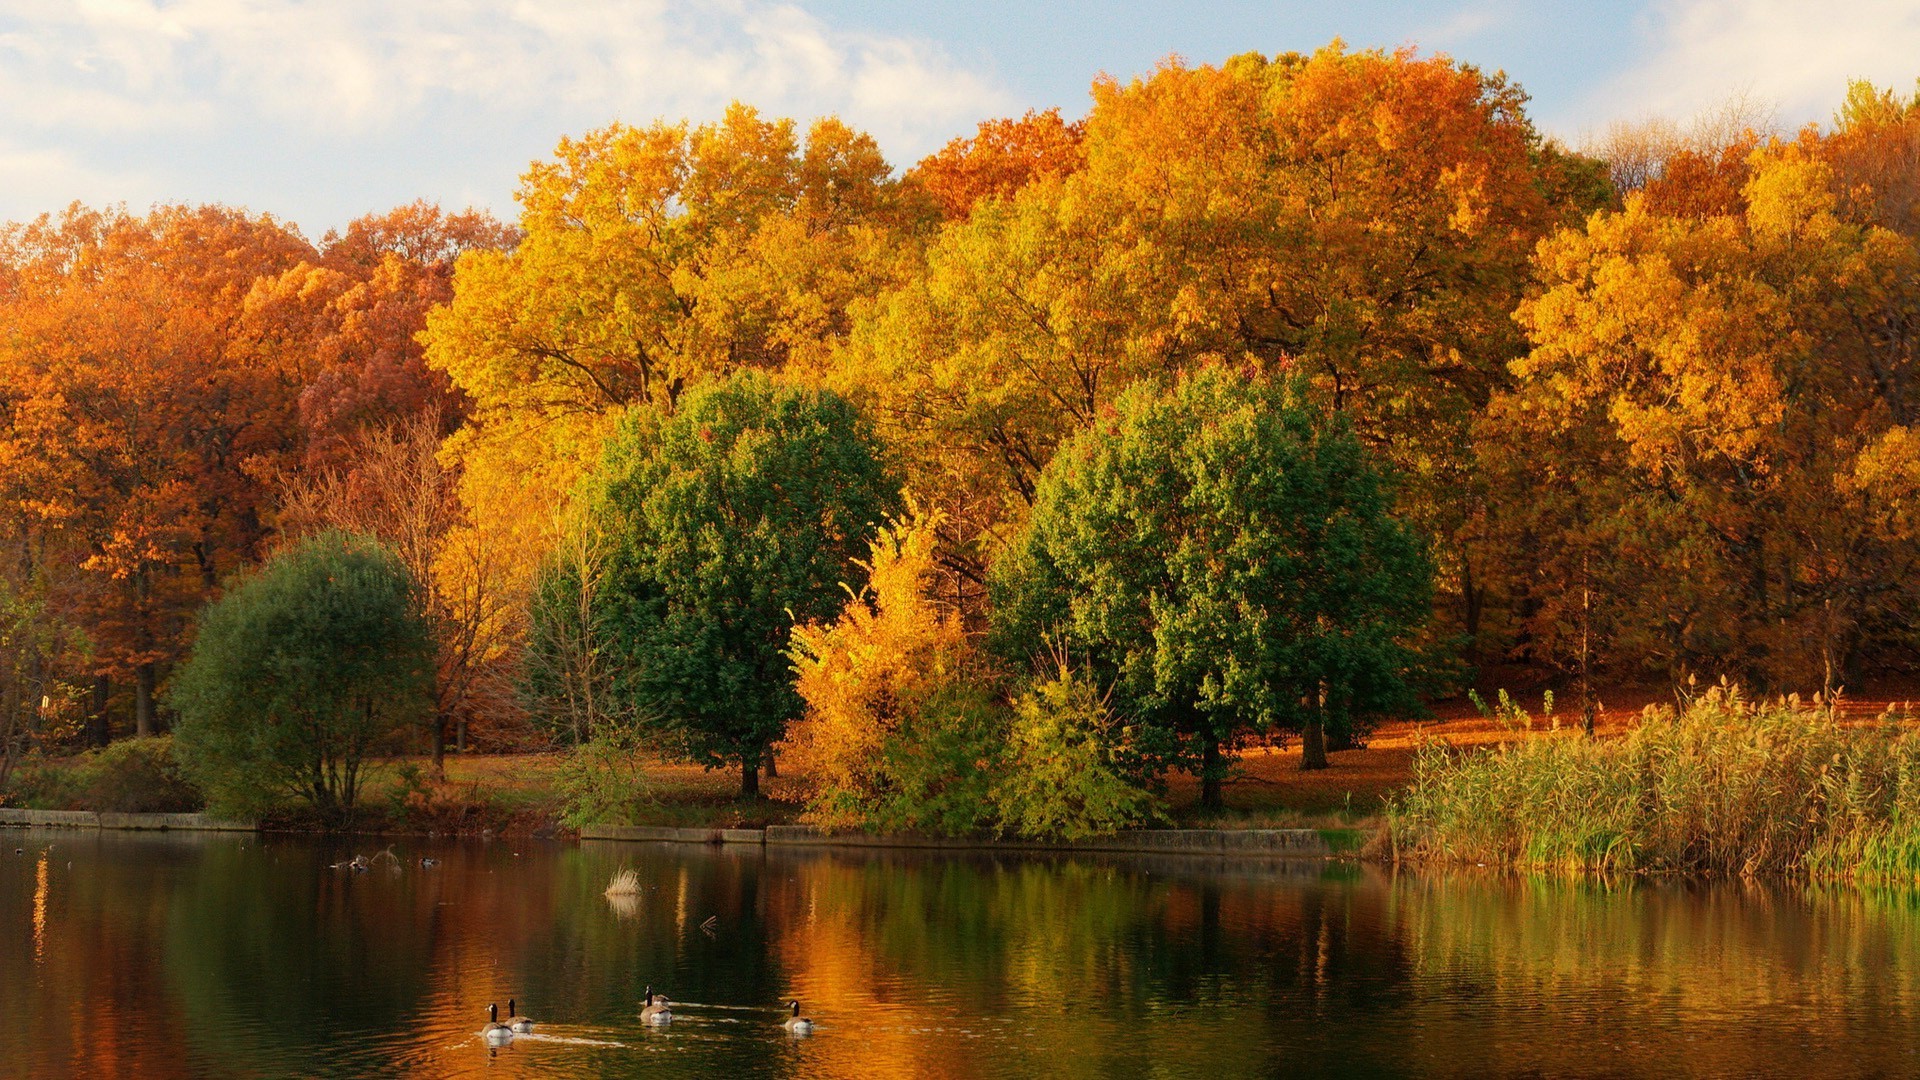 озера осень дерево природа лист воды река на открытом воздухе пейзаж рассвет древесины отражение парк хладнокровие закат живописный яркий бассейн хорошую погоду